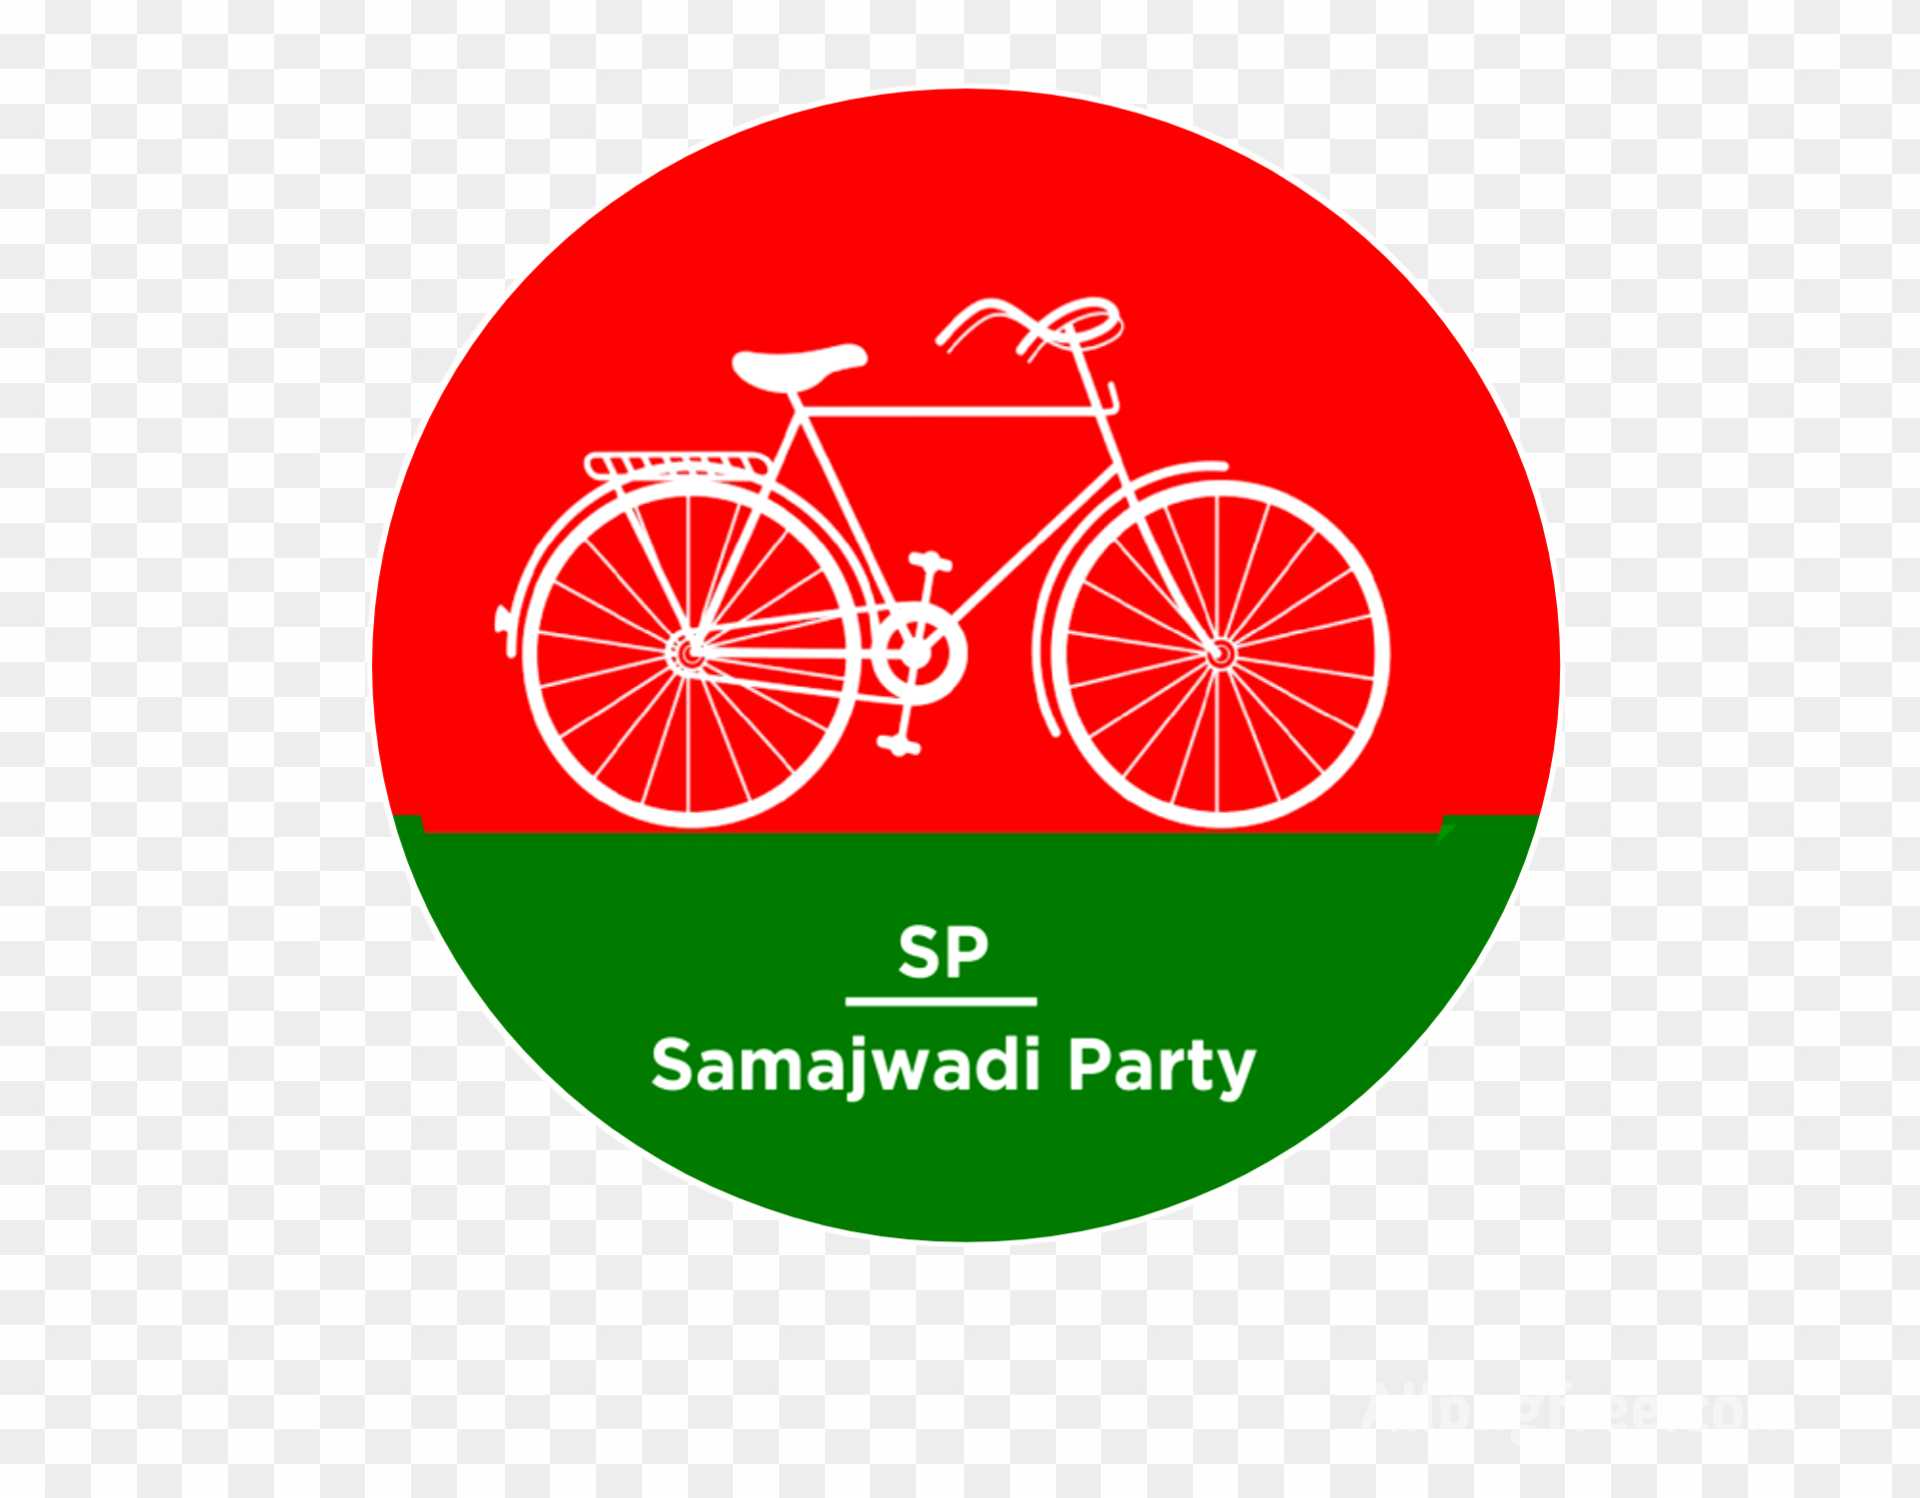 Samajwadi party logo PNG images